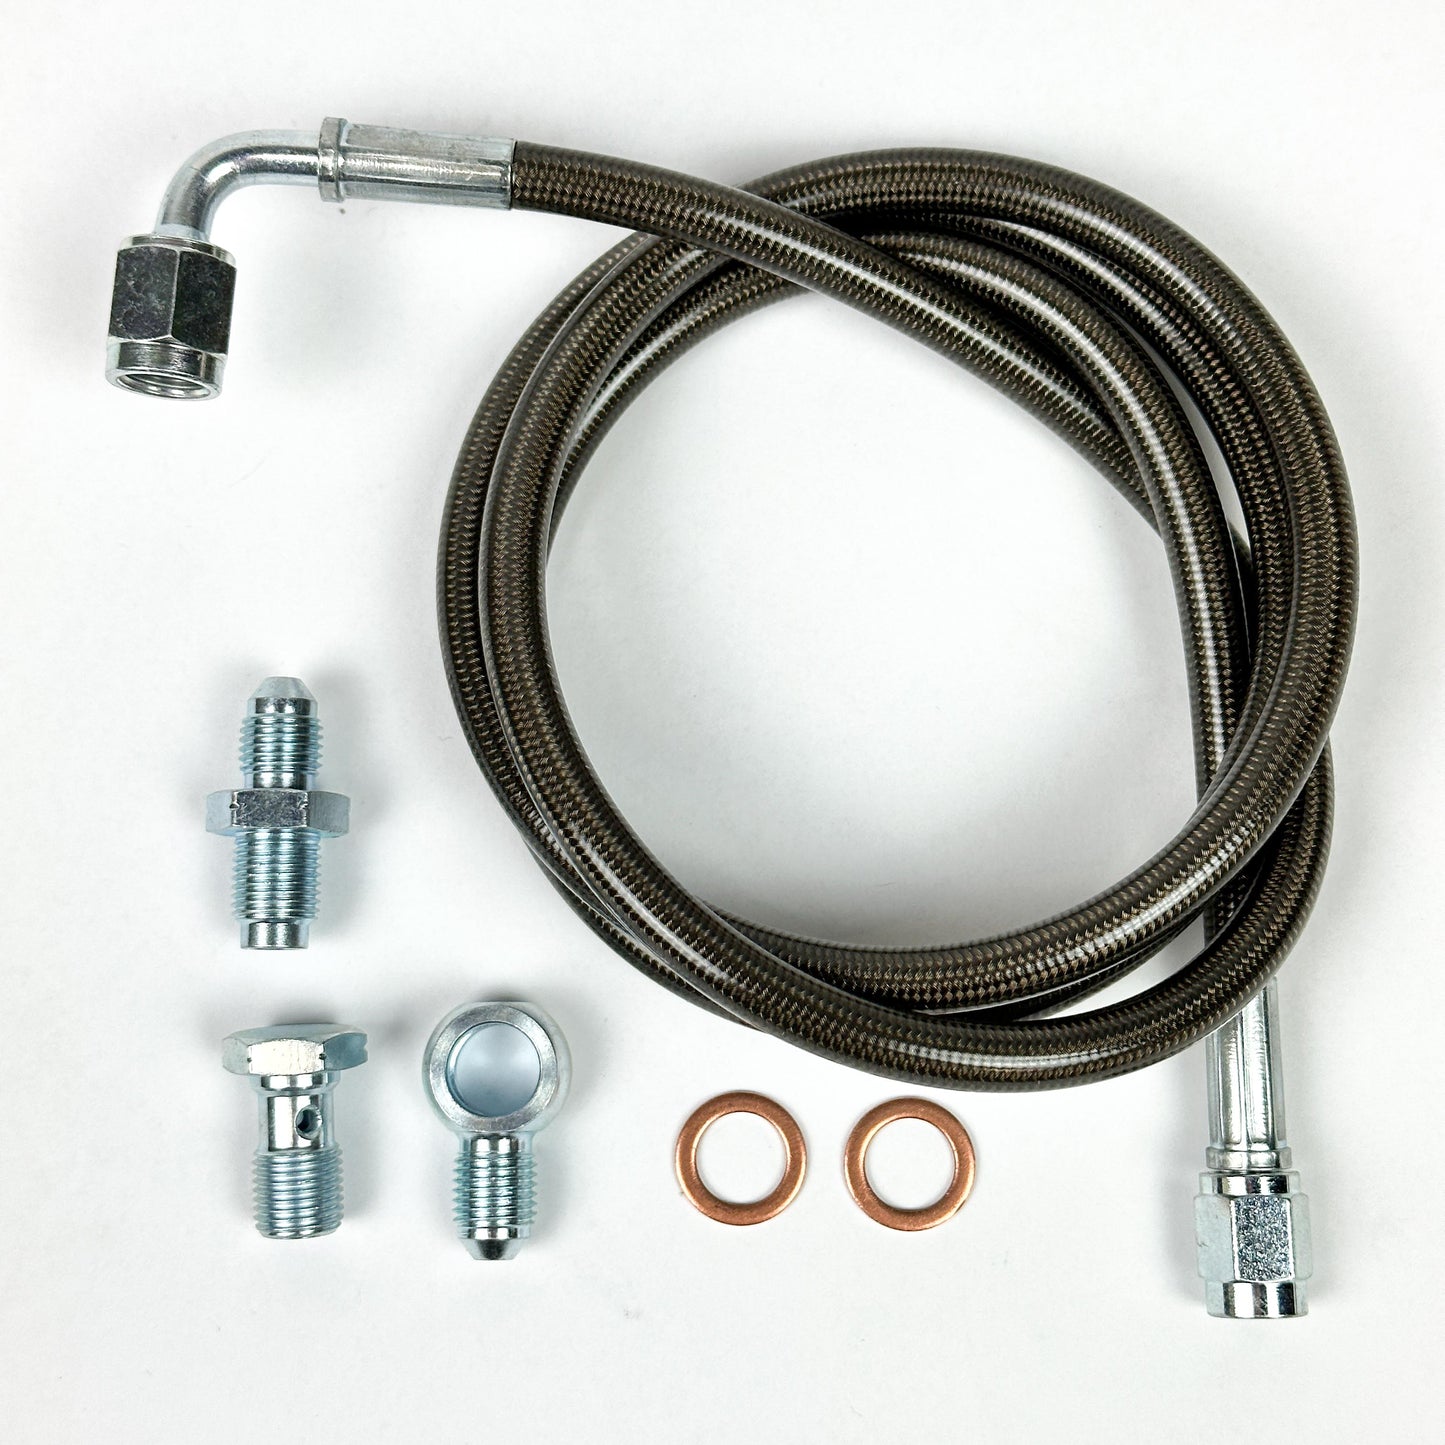 K-Tuned Slave Cylinder / Exedy EM2 Master Cylinder & Clutch Line Kit For 02-05 Honda Civic Si EP3